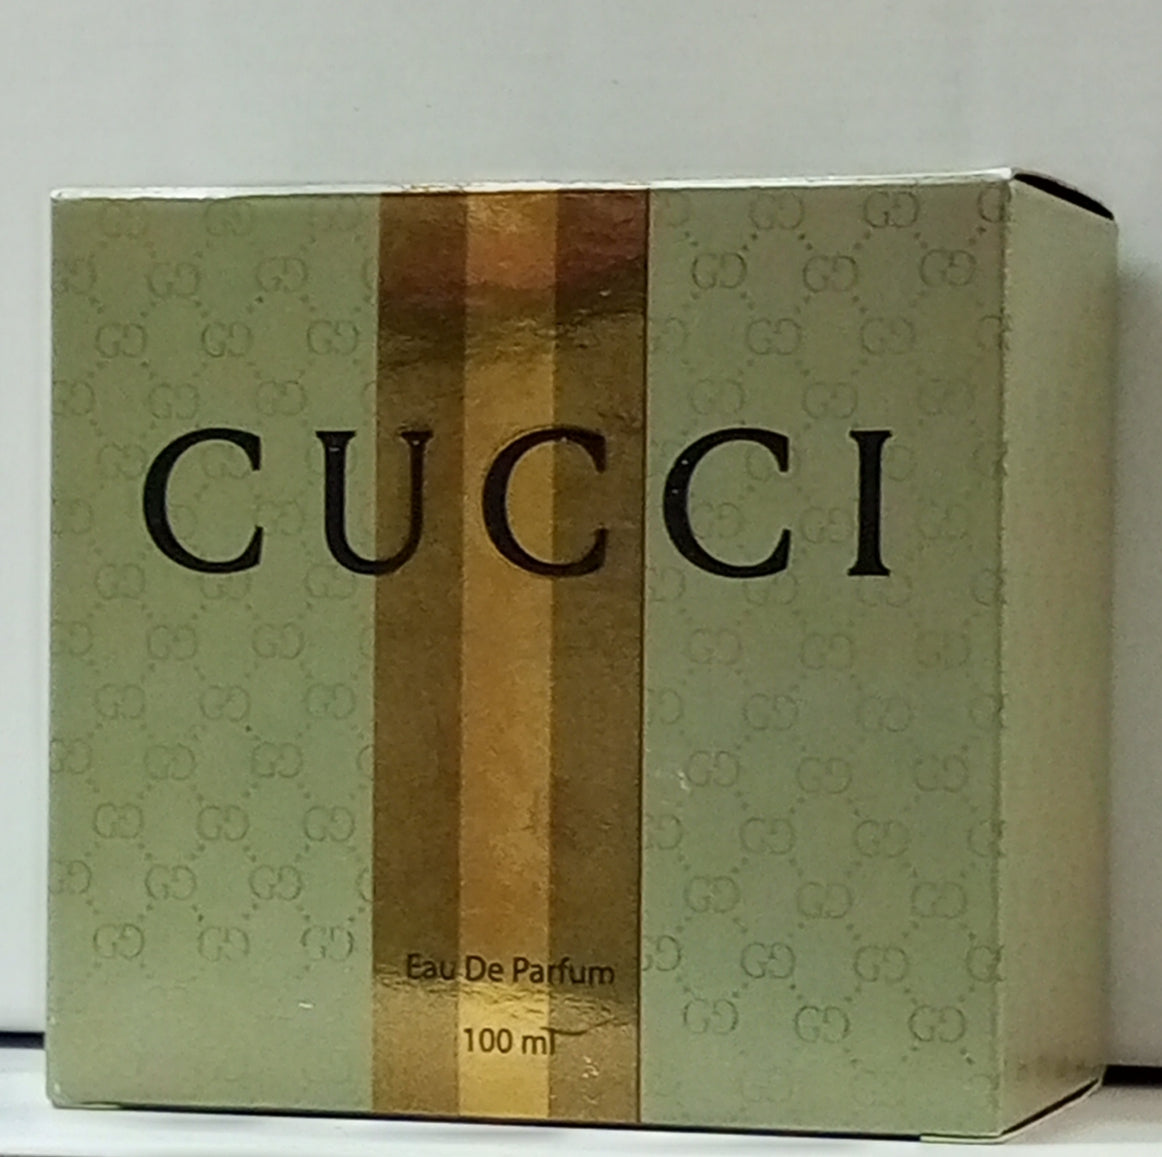 Gucci - Eau de Parfum » Reviews & Perfume Facts